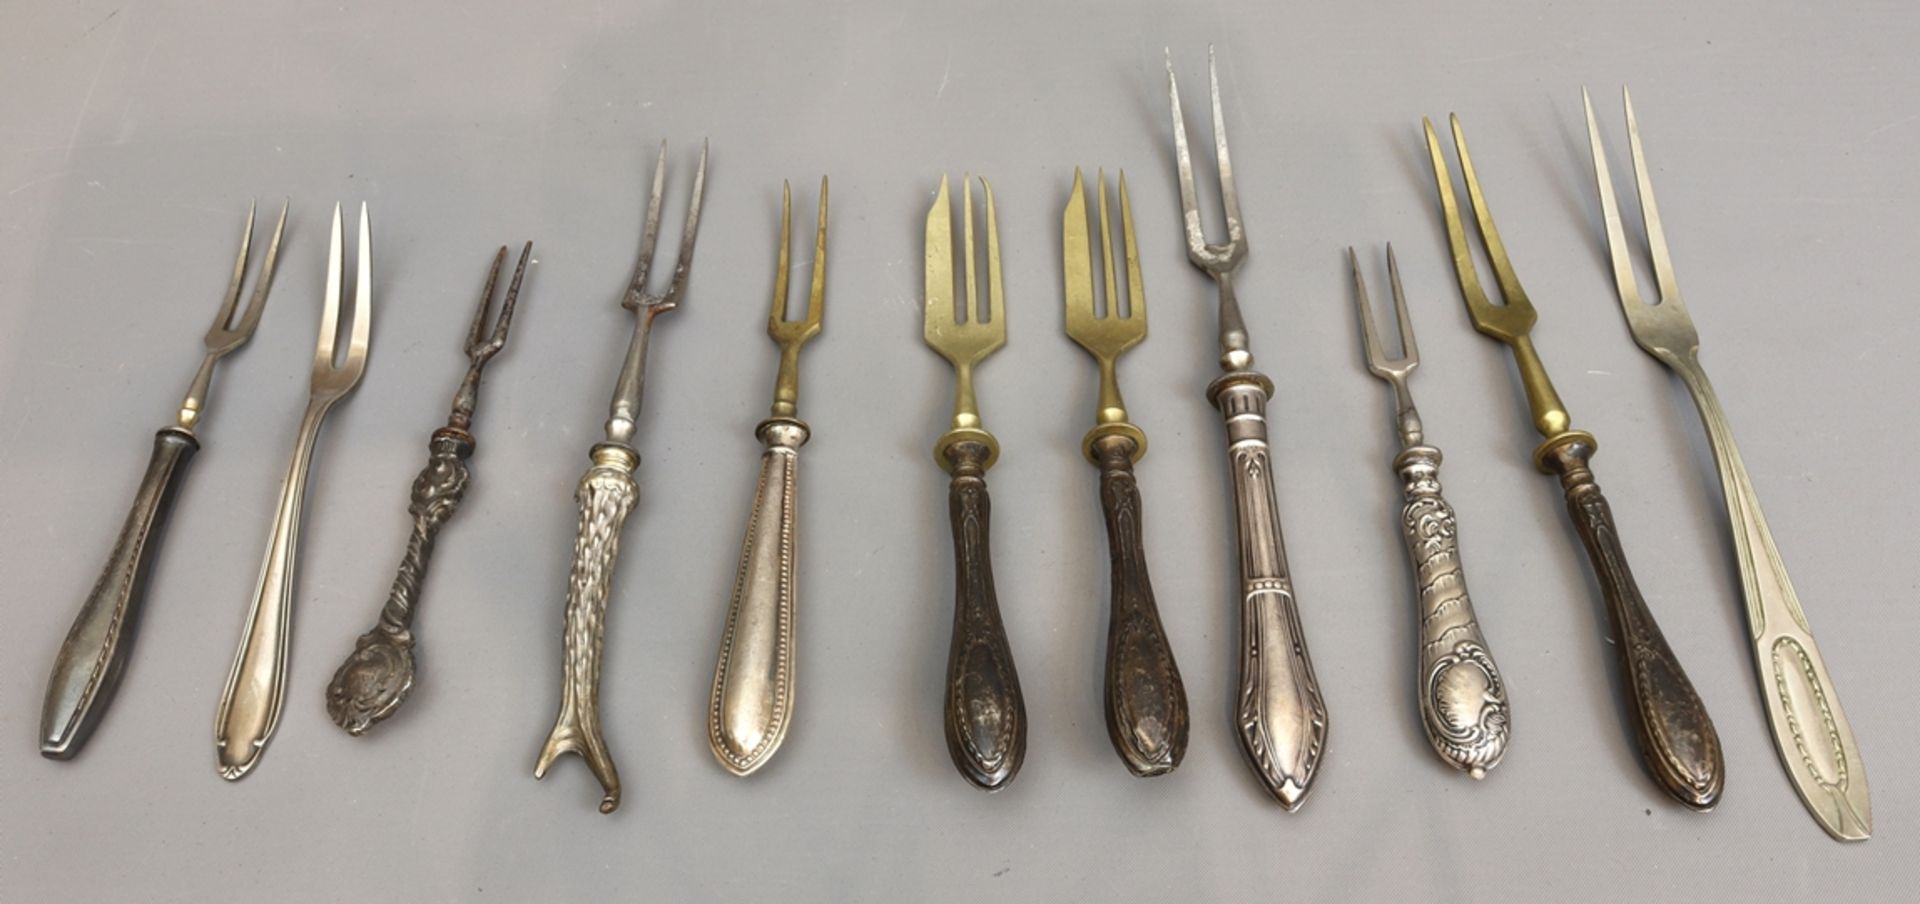 Lot of serving forks, Historism to 30s, German - Image 3 of 3